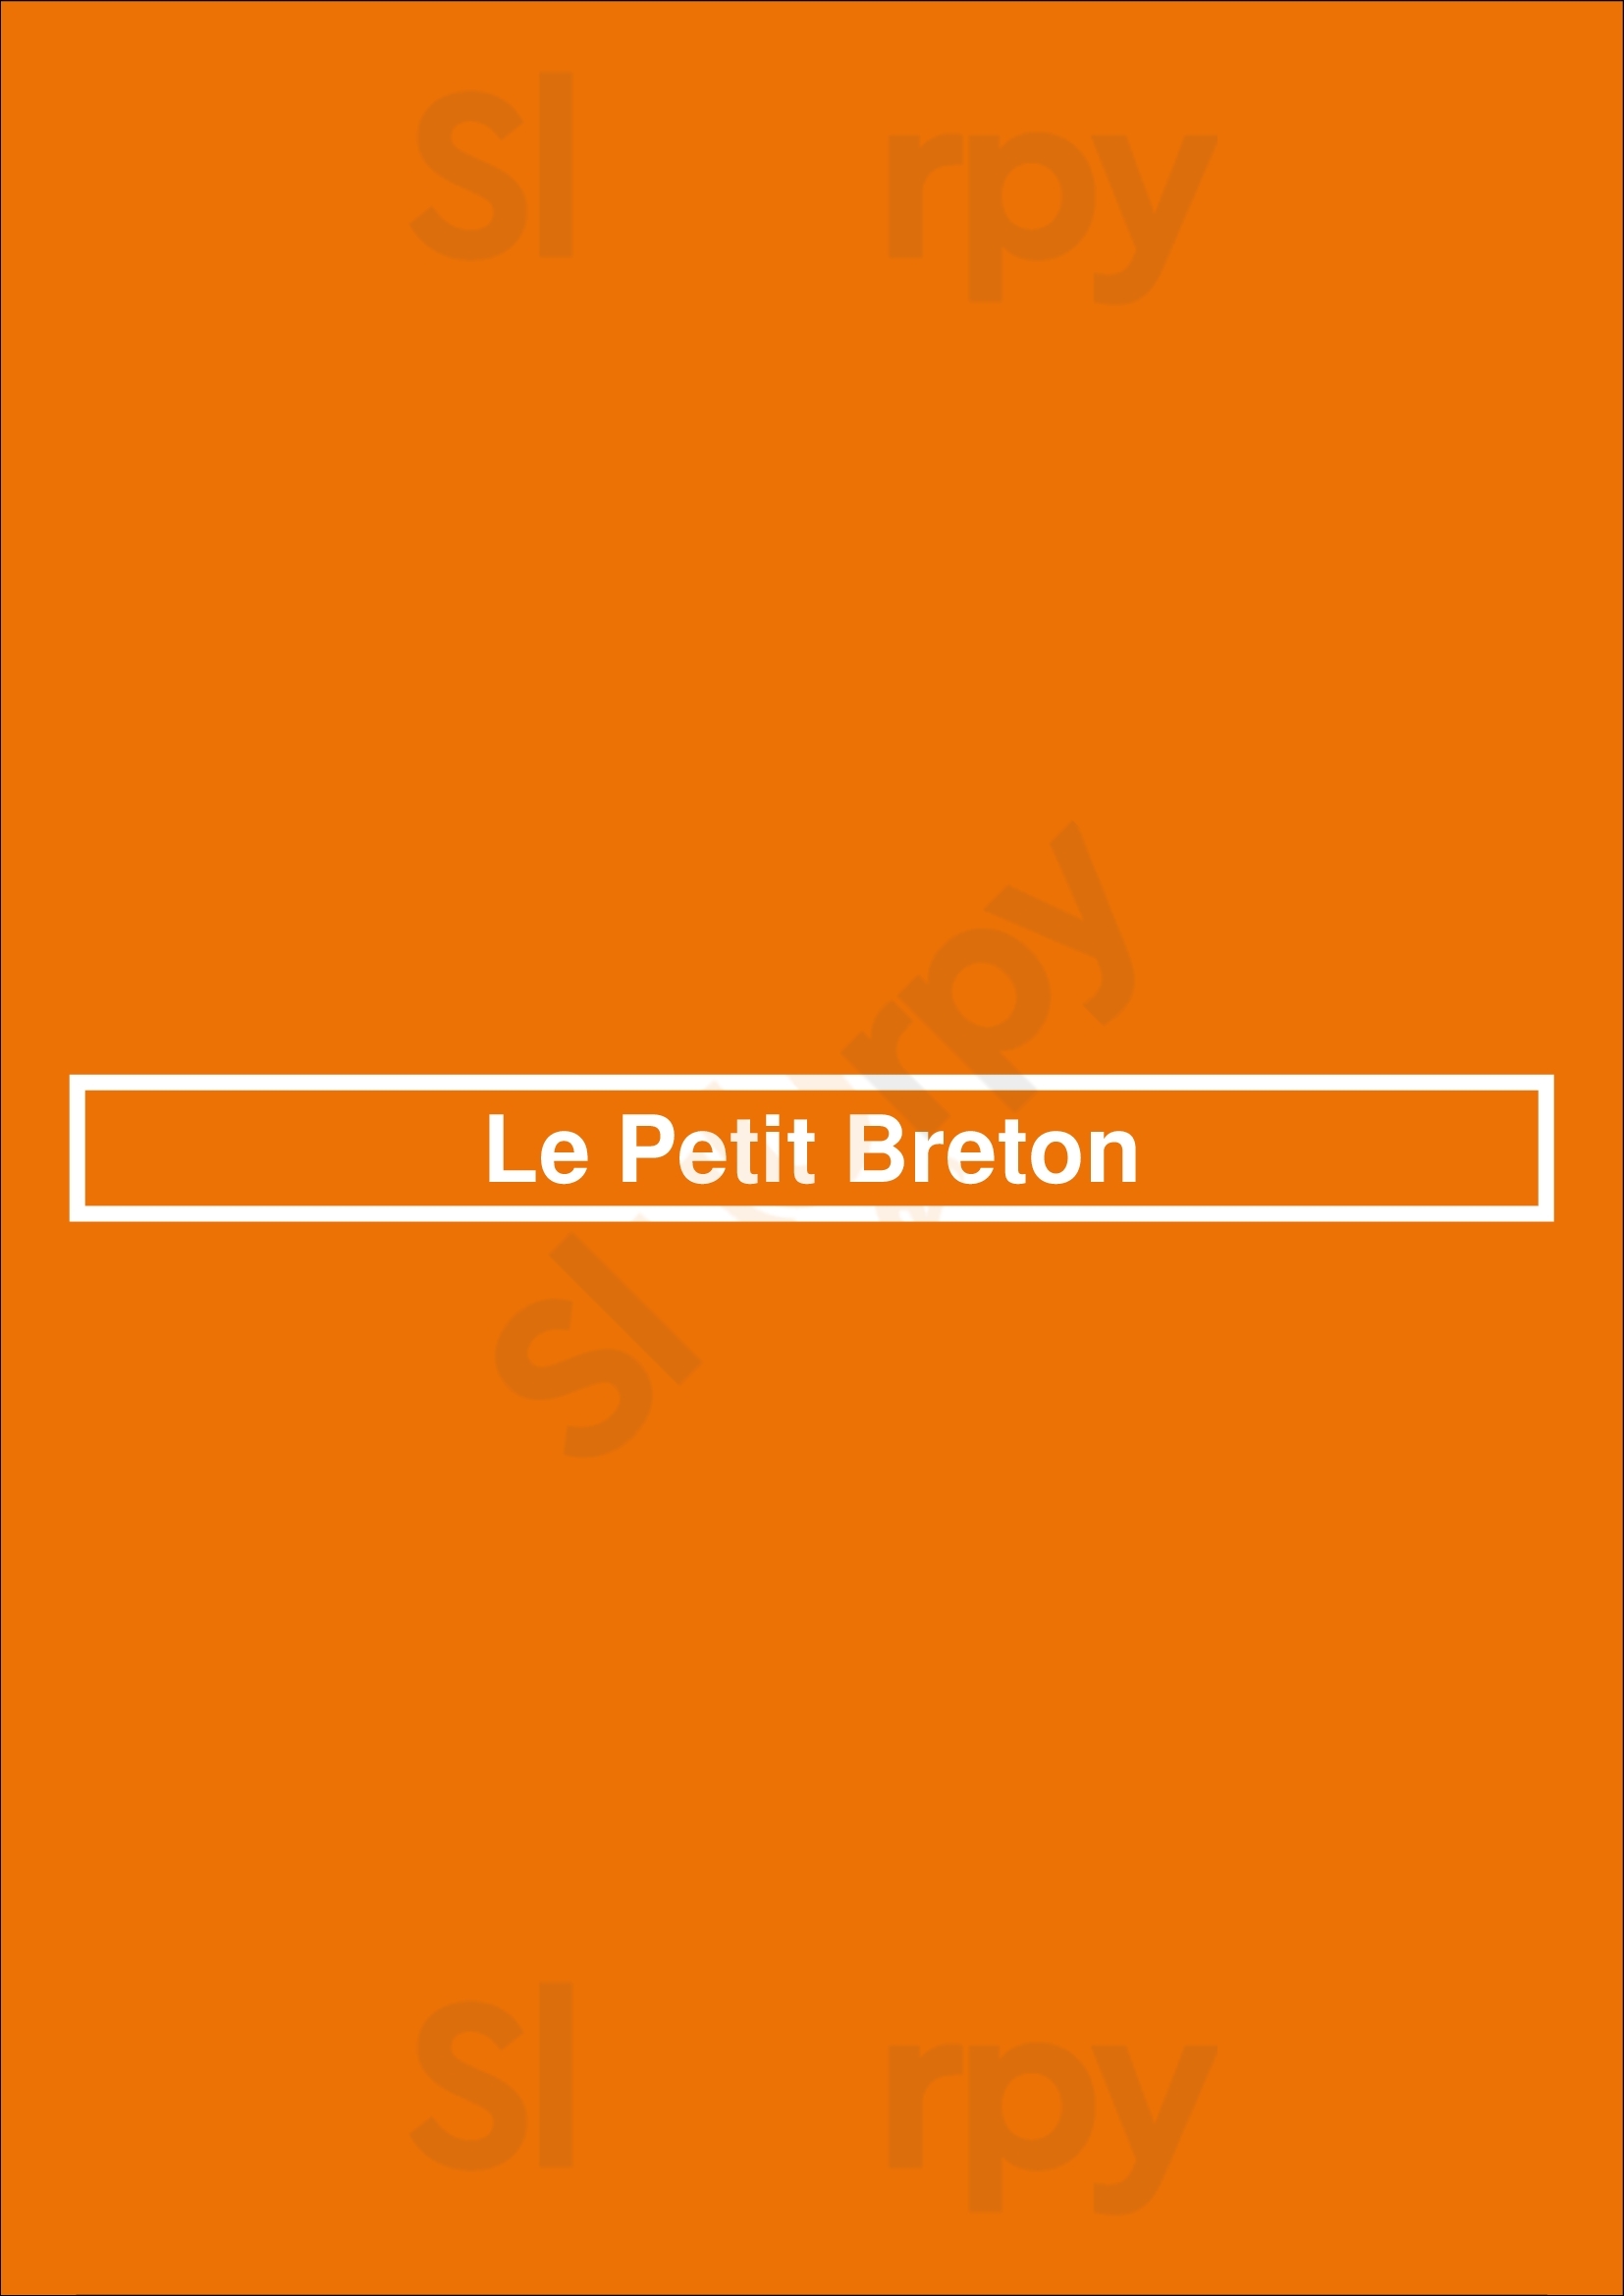 Le Petit Breton Dublin Menu - 1